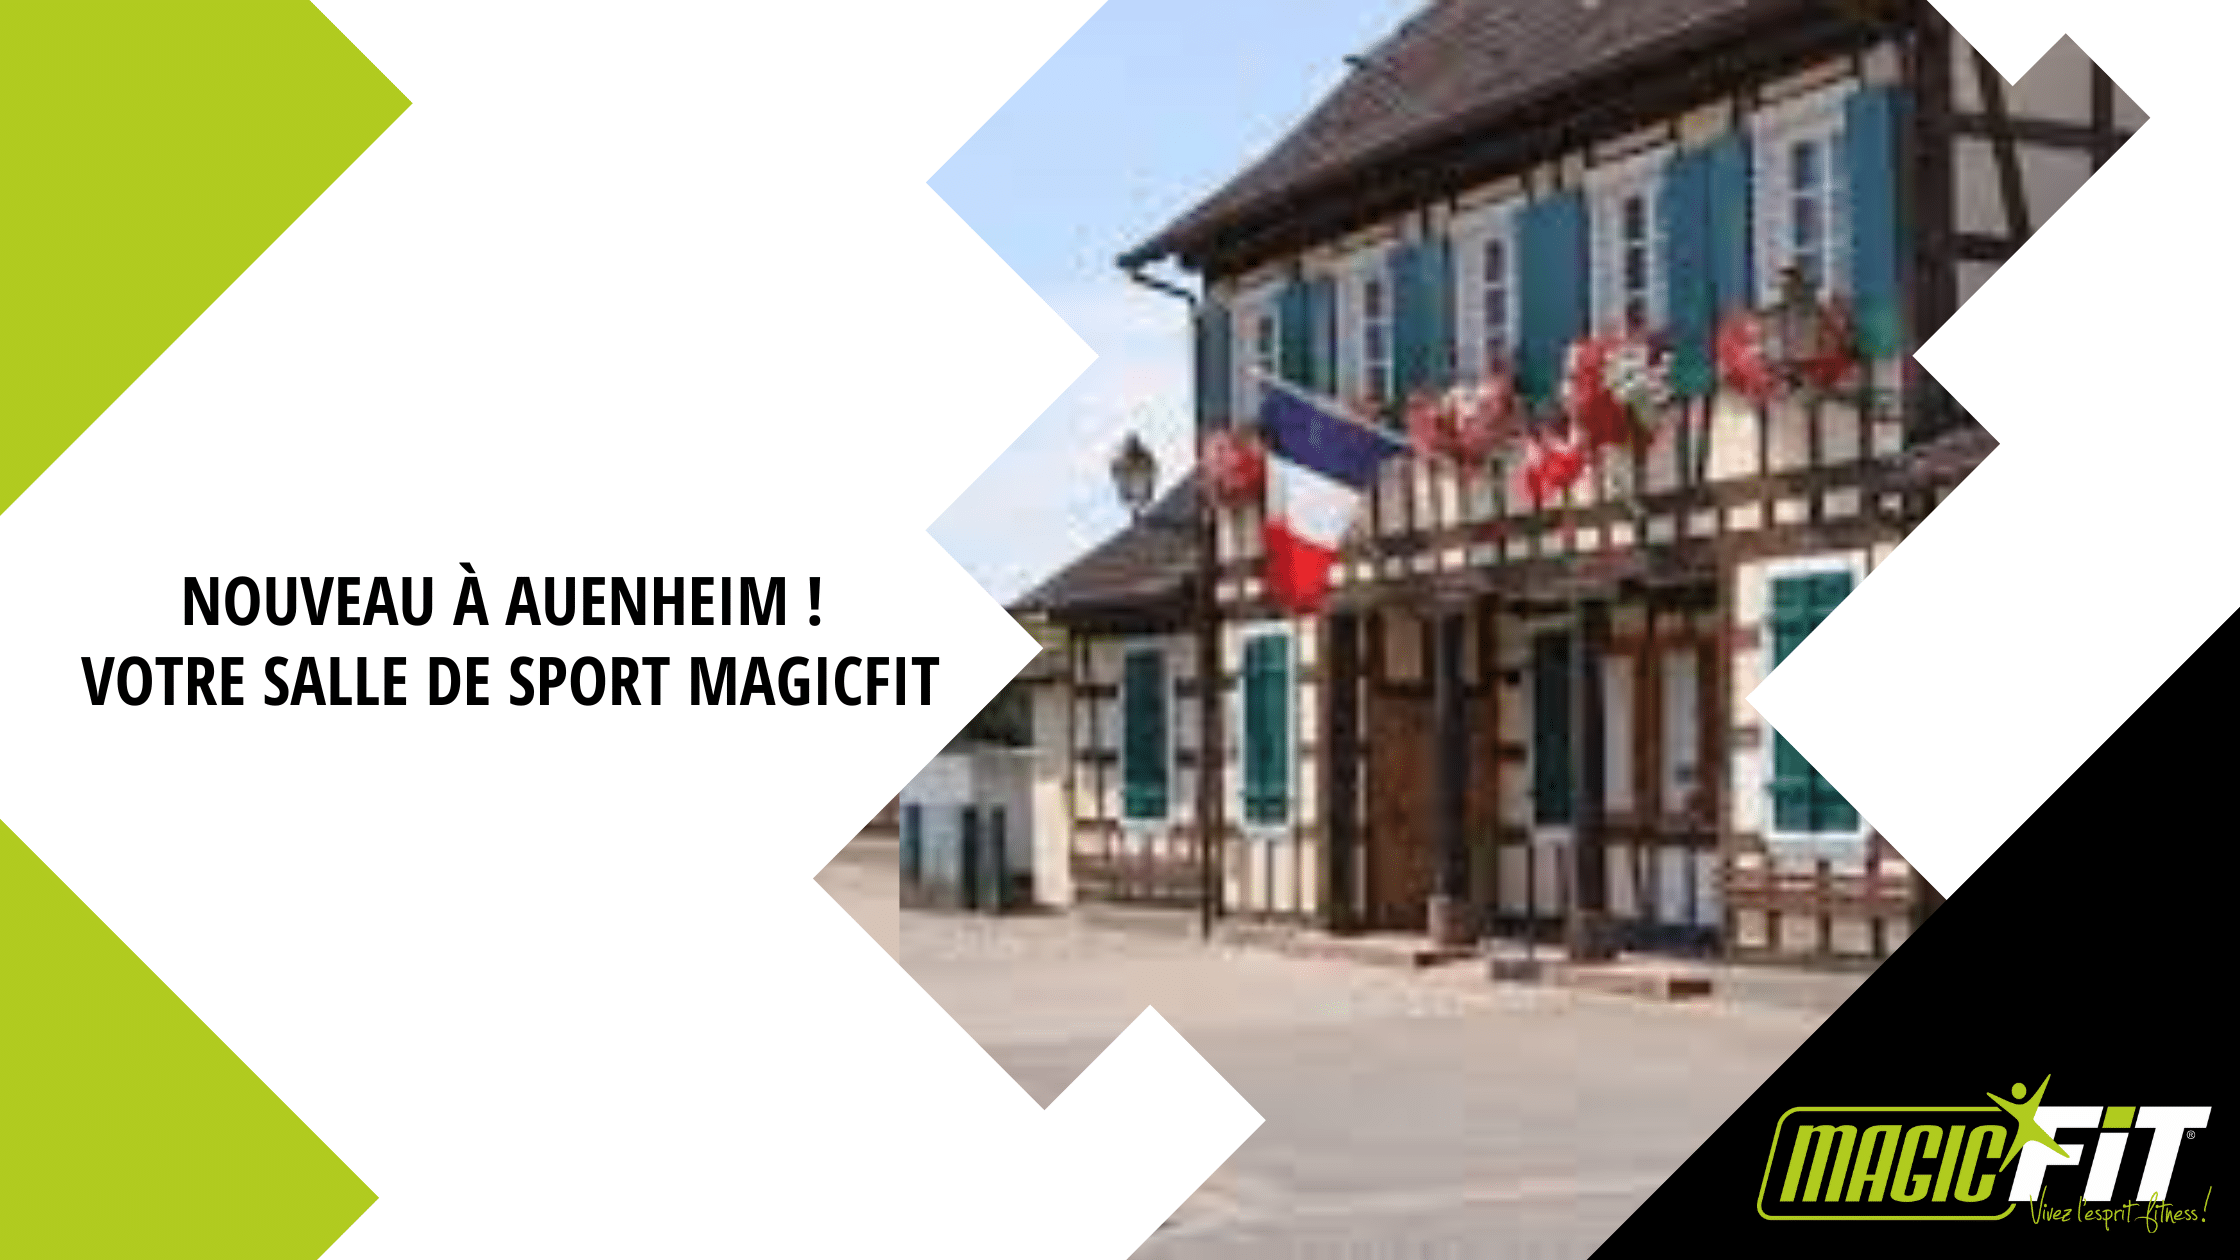 Magicfit Auenheim